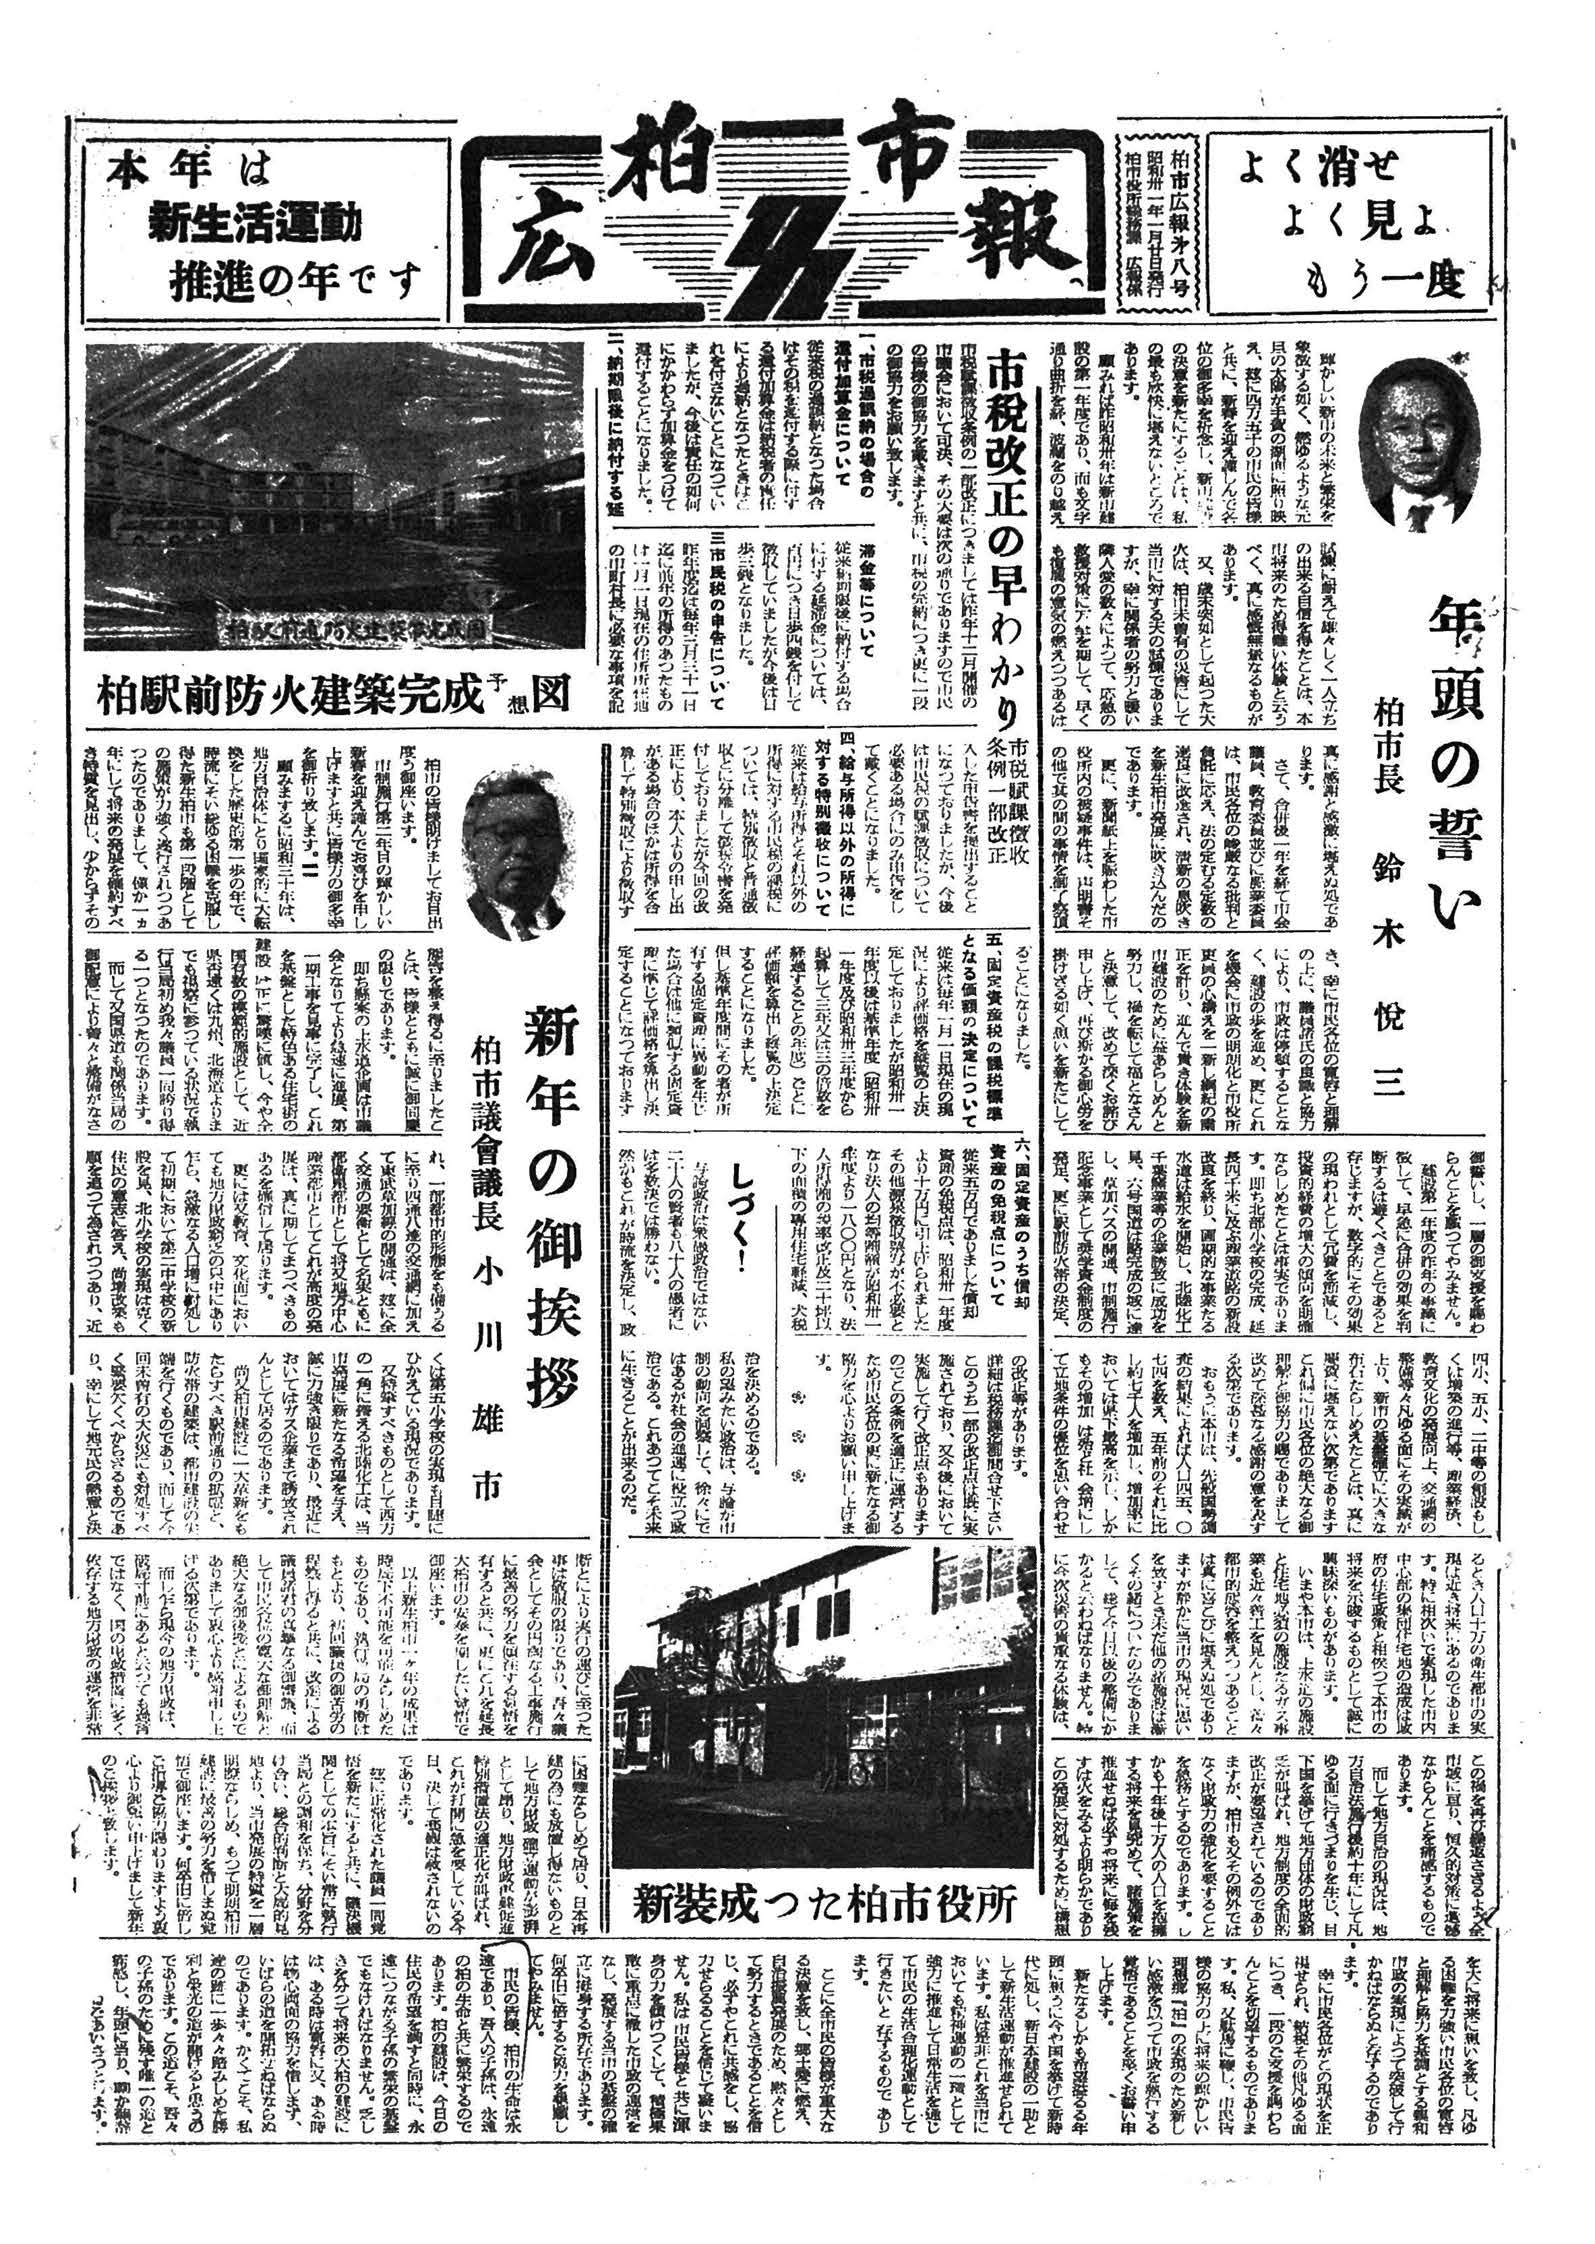 広報かしわ　昭和31年1月20日発行　8号